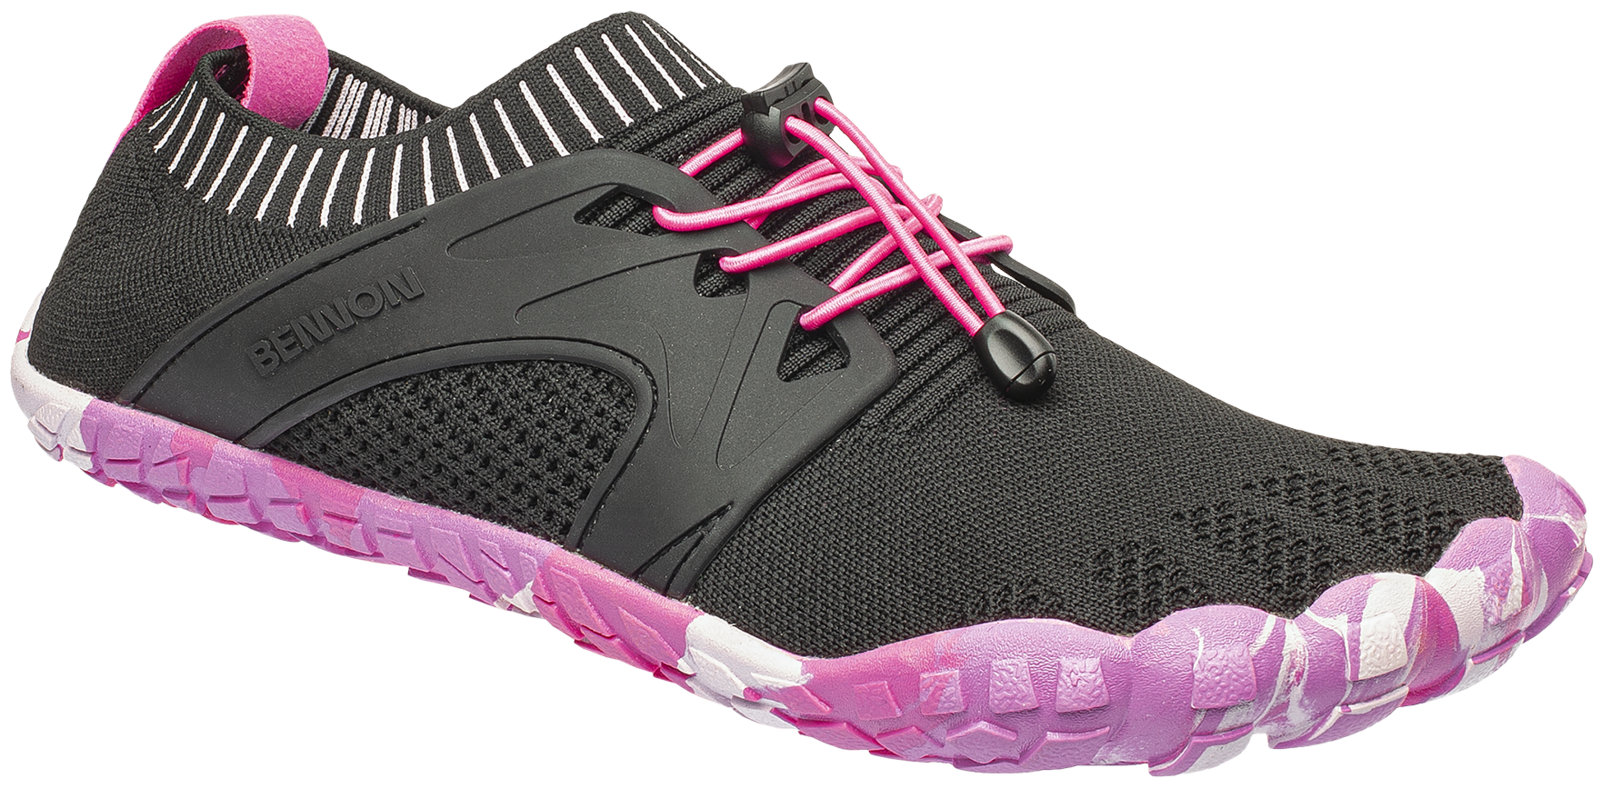 Voľnočasová barefoot obuv Bennon Bosky - veľkosť: 37, farba: čierna/ružová